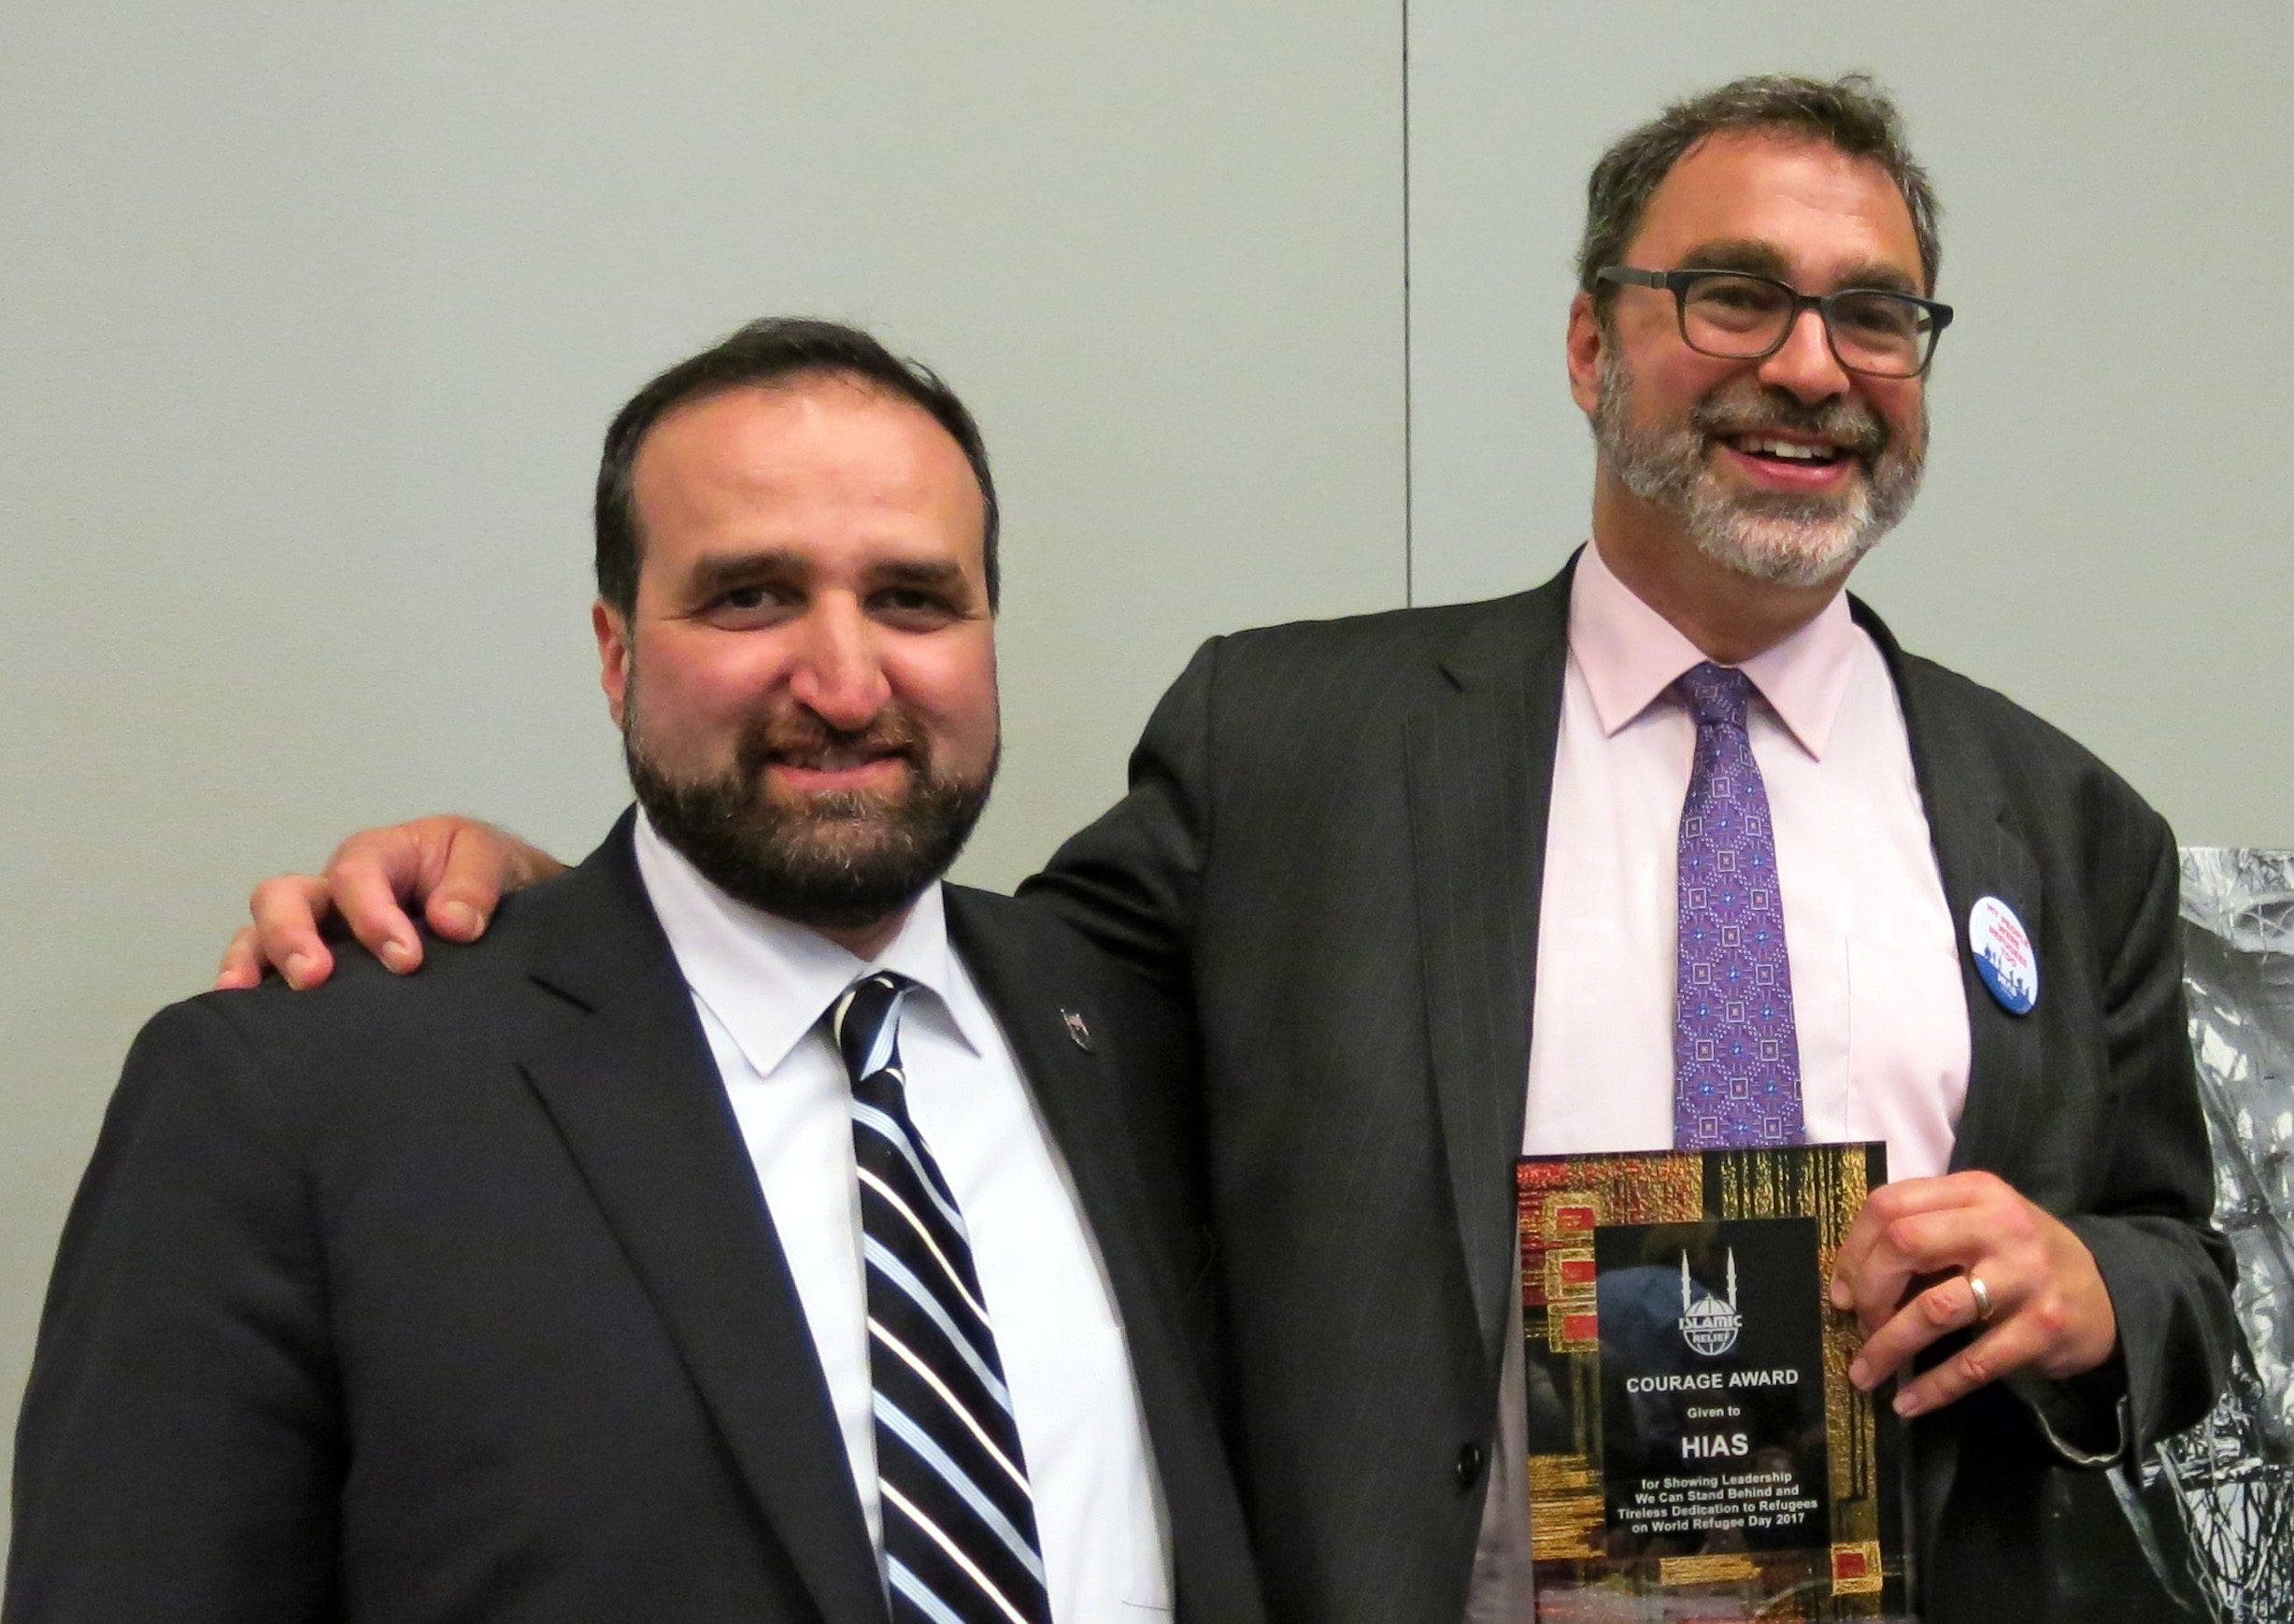 HIAS recibe el Premio al Valor de Islamic Relief USA por su "incansable labor de ayuda a los refugiados"